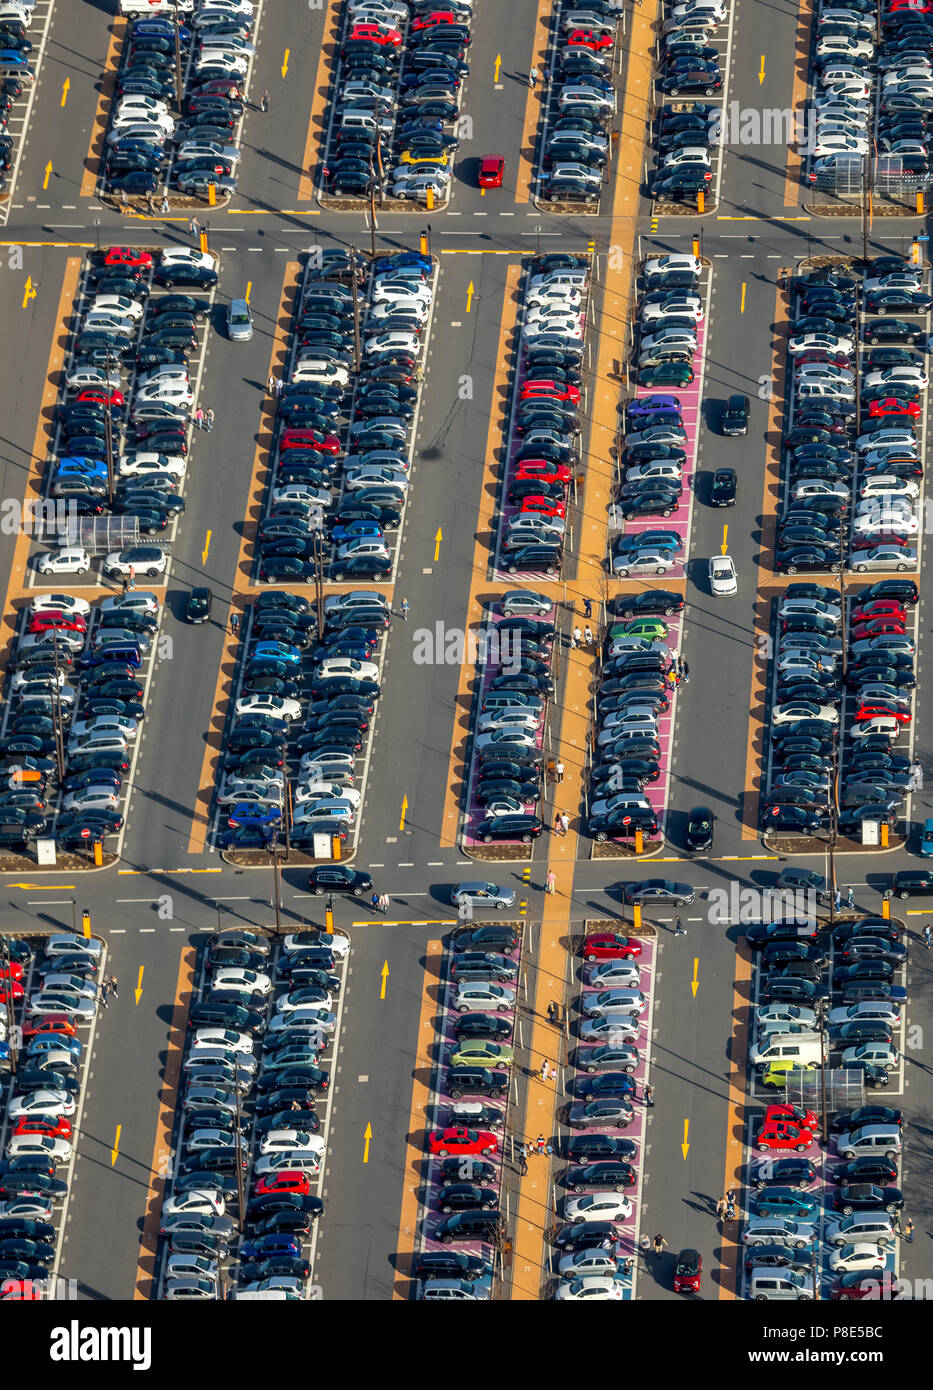 Vista aérea, aparcamiento completo con marcas viales, centro comercial Parque de Ruhr, Bochum, área de Ruhr, Renania del Norte-Westfalia, Alemania Foto de stock